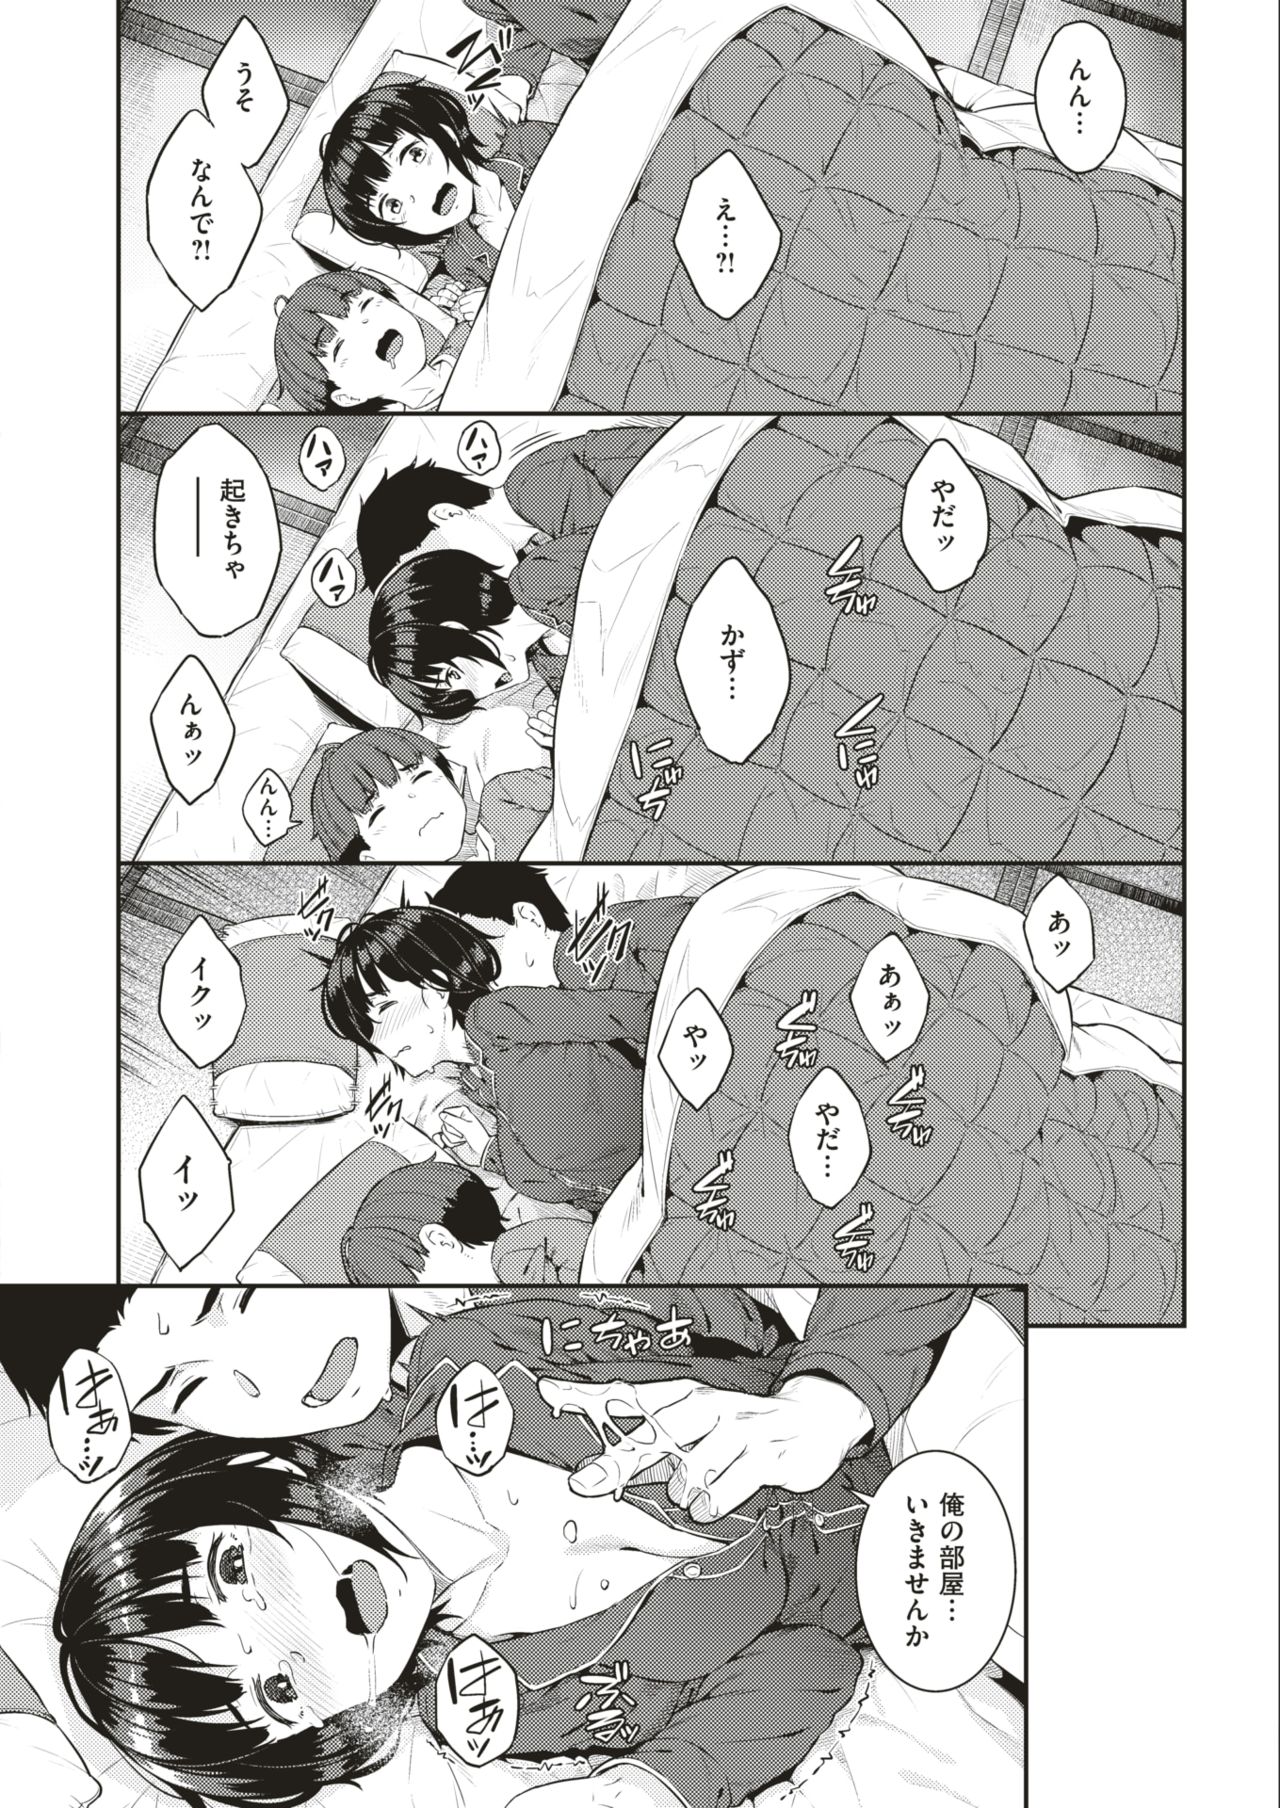 【エロ漫画】僕が寝てる横でお母さんとおじさんが何かしてる・・・あ母さん変な声出してるし何してるんだろう･･･?